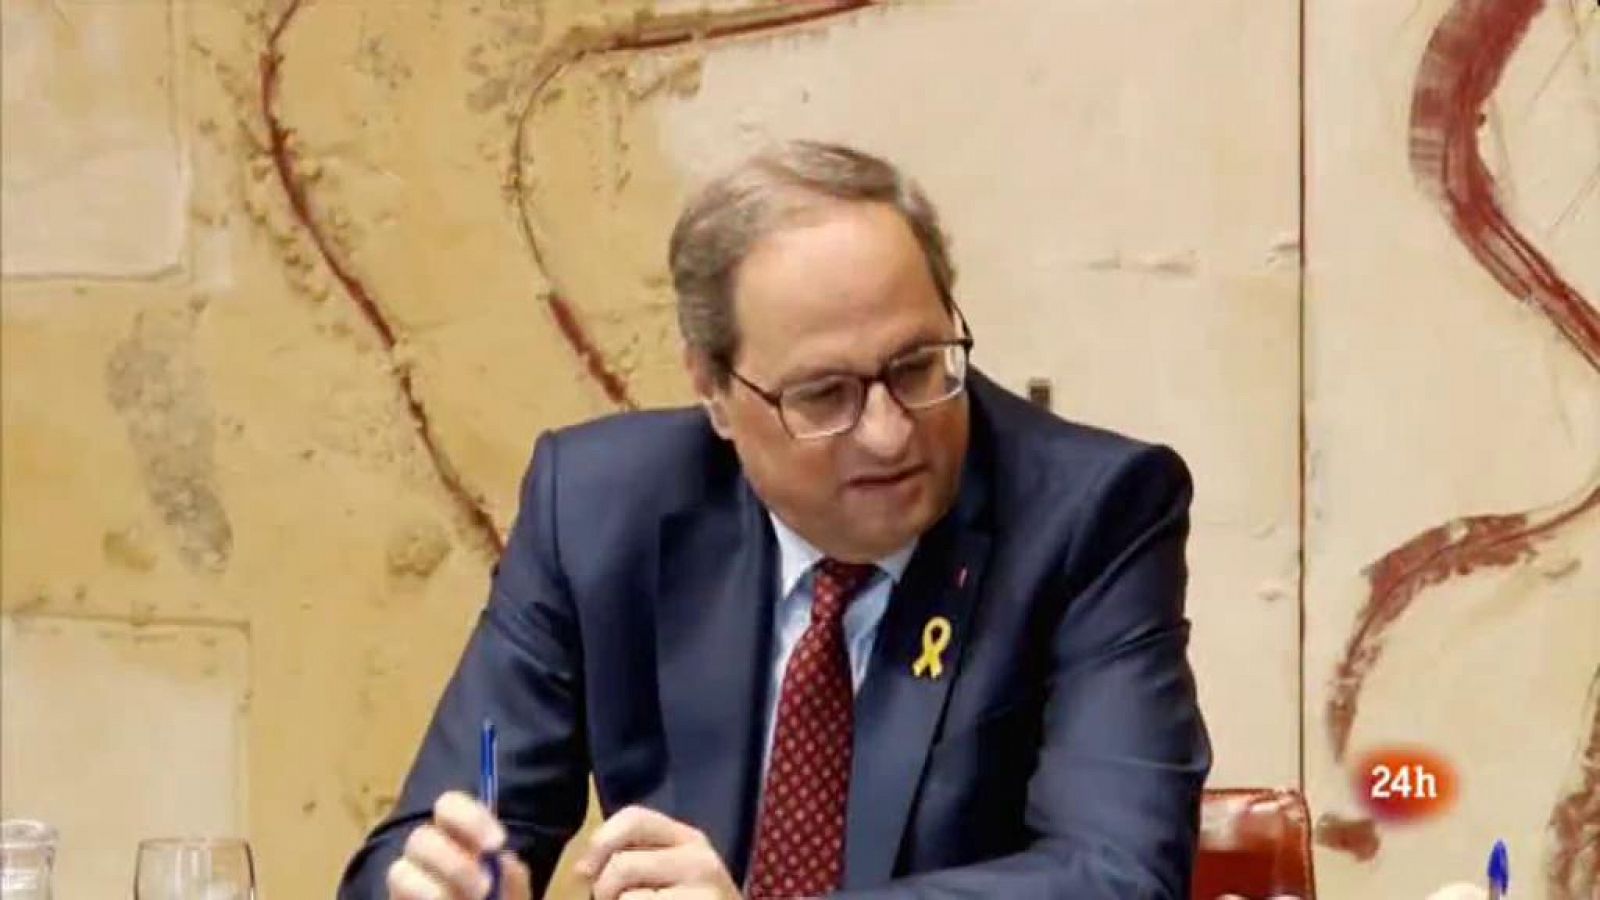 Vídeo sobre l'anàlisi de l'actualitat política a Catalunya. Vespre 24 del 02/04/2019